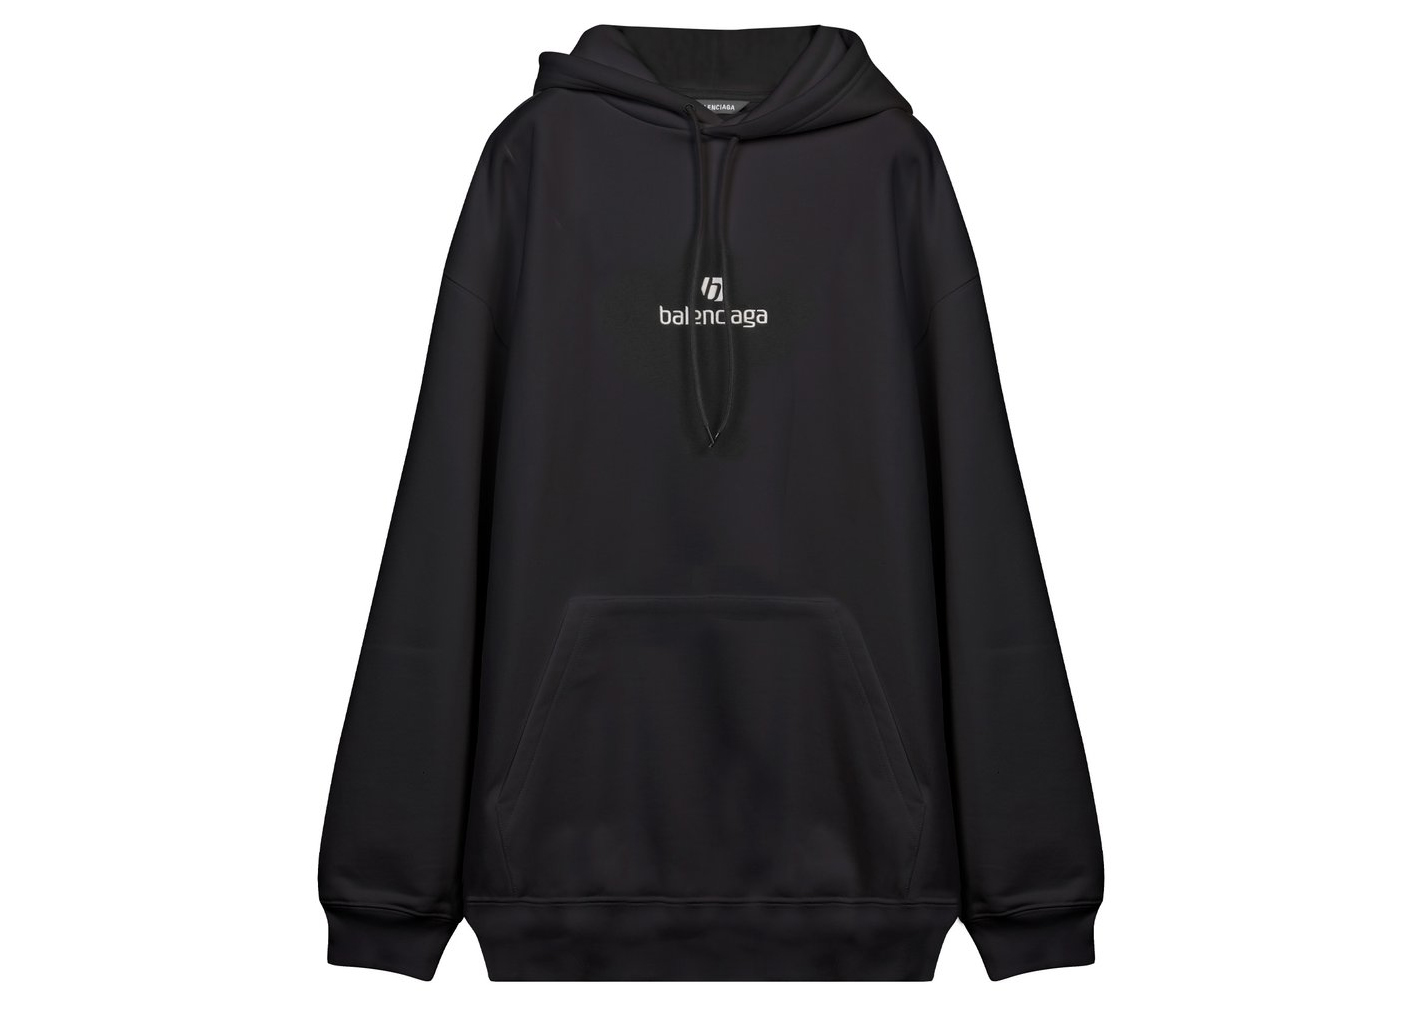 Balenciaga Black Embroidered Sweatshirt